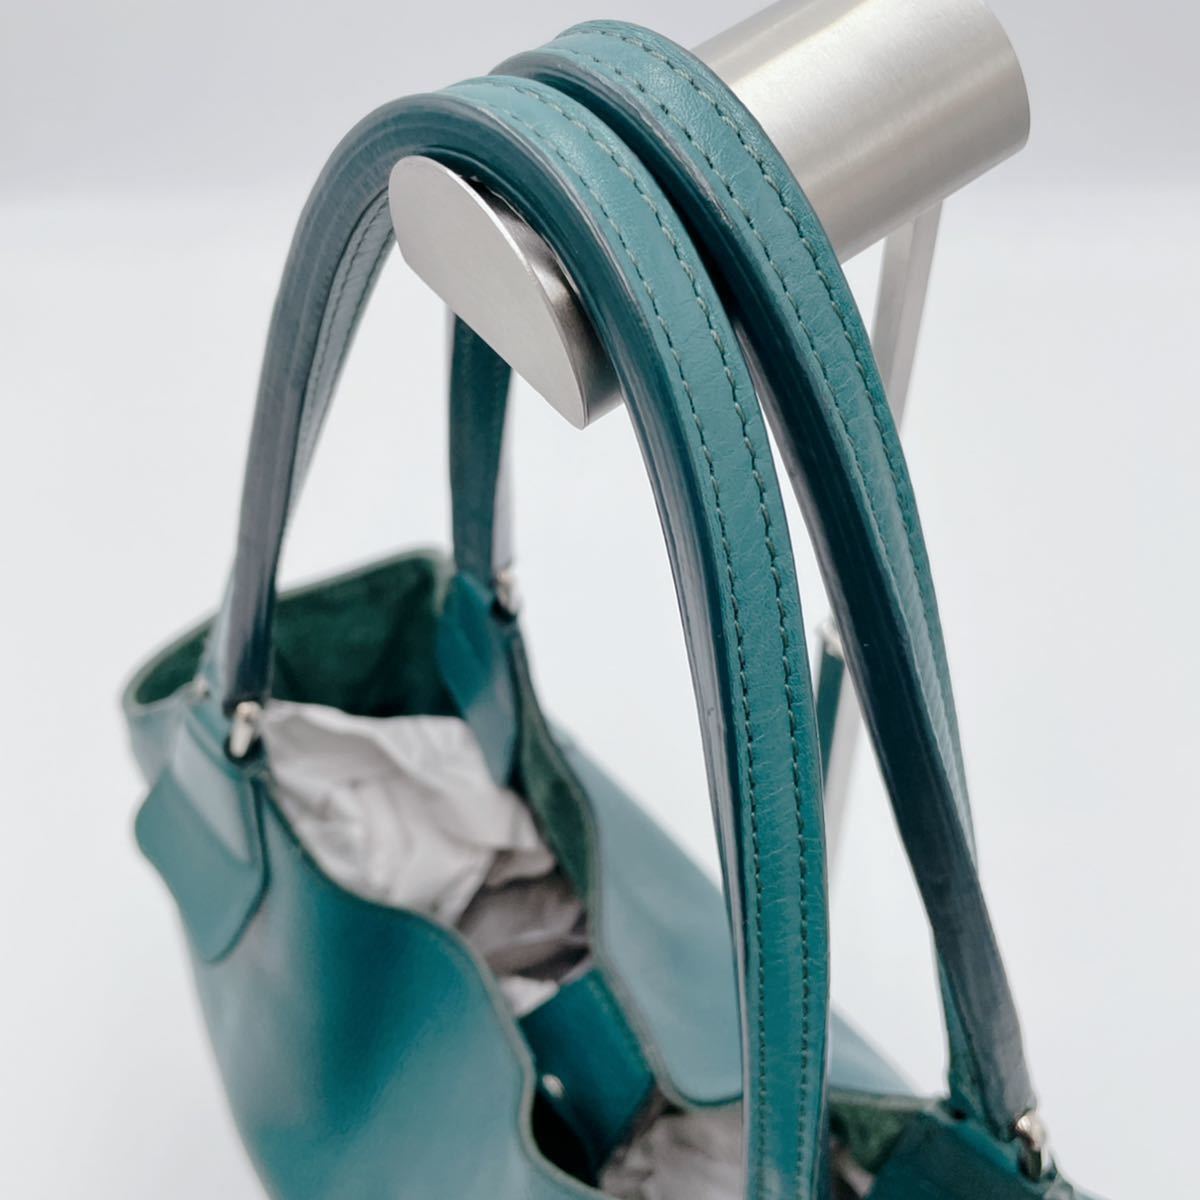 【極美品】 HIROFU ヒロフ ショルダーバッグ ターコイズブルー ハンドバッグ 肩掛け 青緑 ロゴ型押し レザー 本革 ブルー バッグ